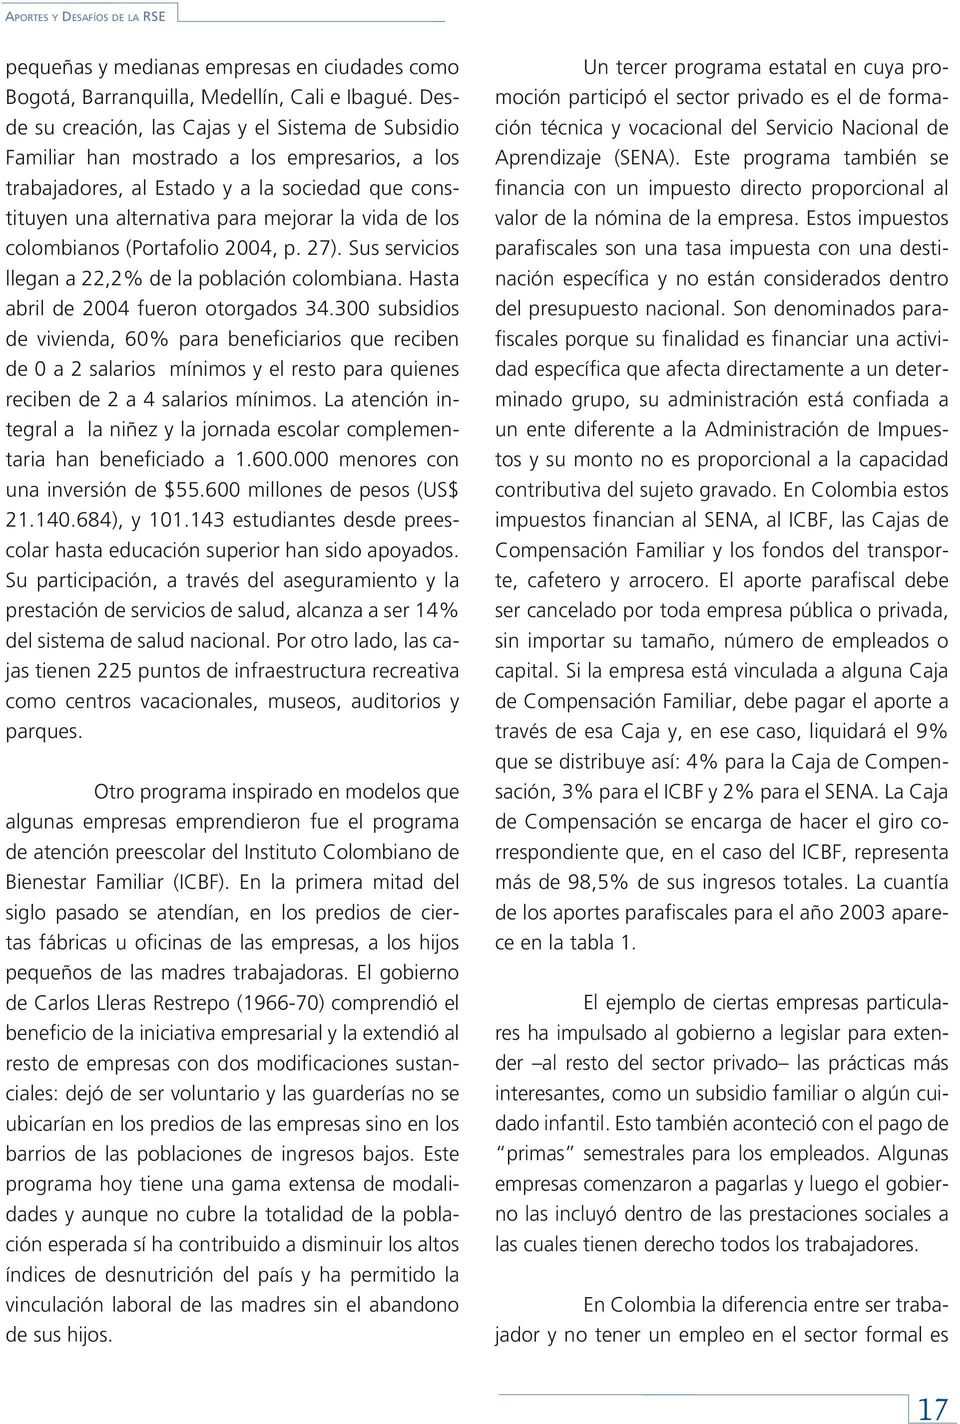 los colombianos (Portafolio 2004, p. 27). Sus servicios llegan a 22,2% de la población colombiana. Hasta abril de 2004 fueron otorgados 34.